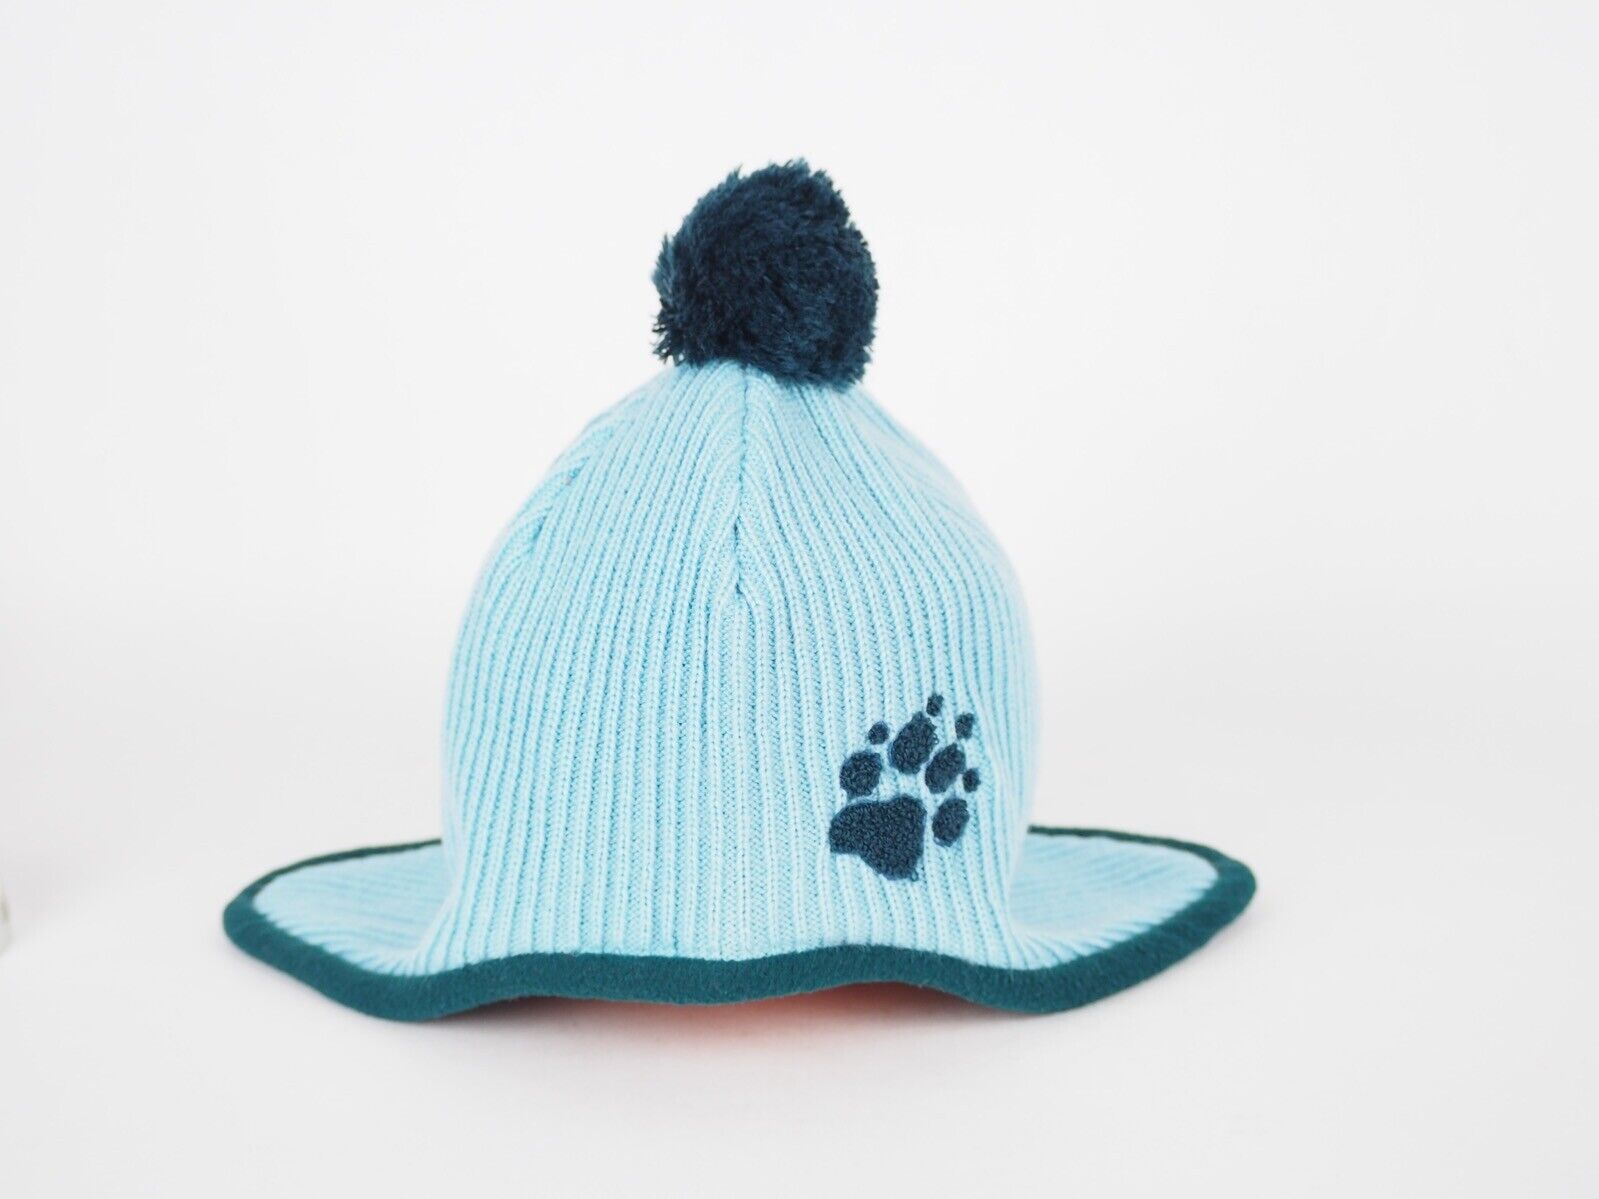 Kids Jack Wolfskin Knitted Pompom Blue Hat London – Style Ear 1901091 Cap War Mineral Top